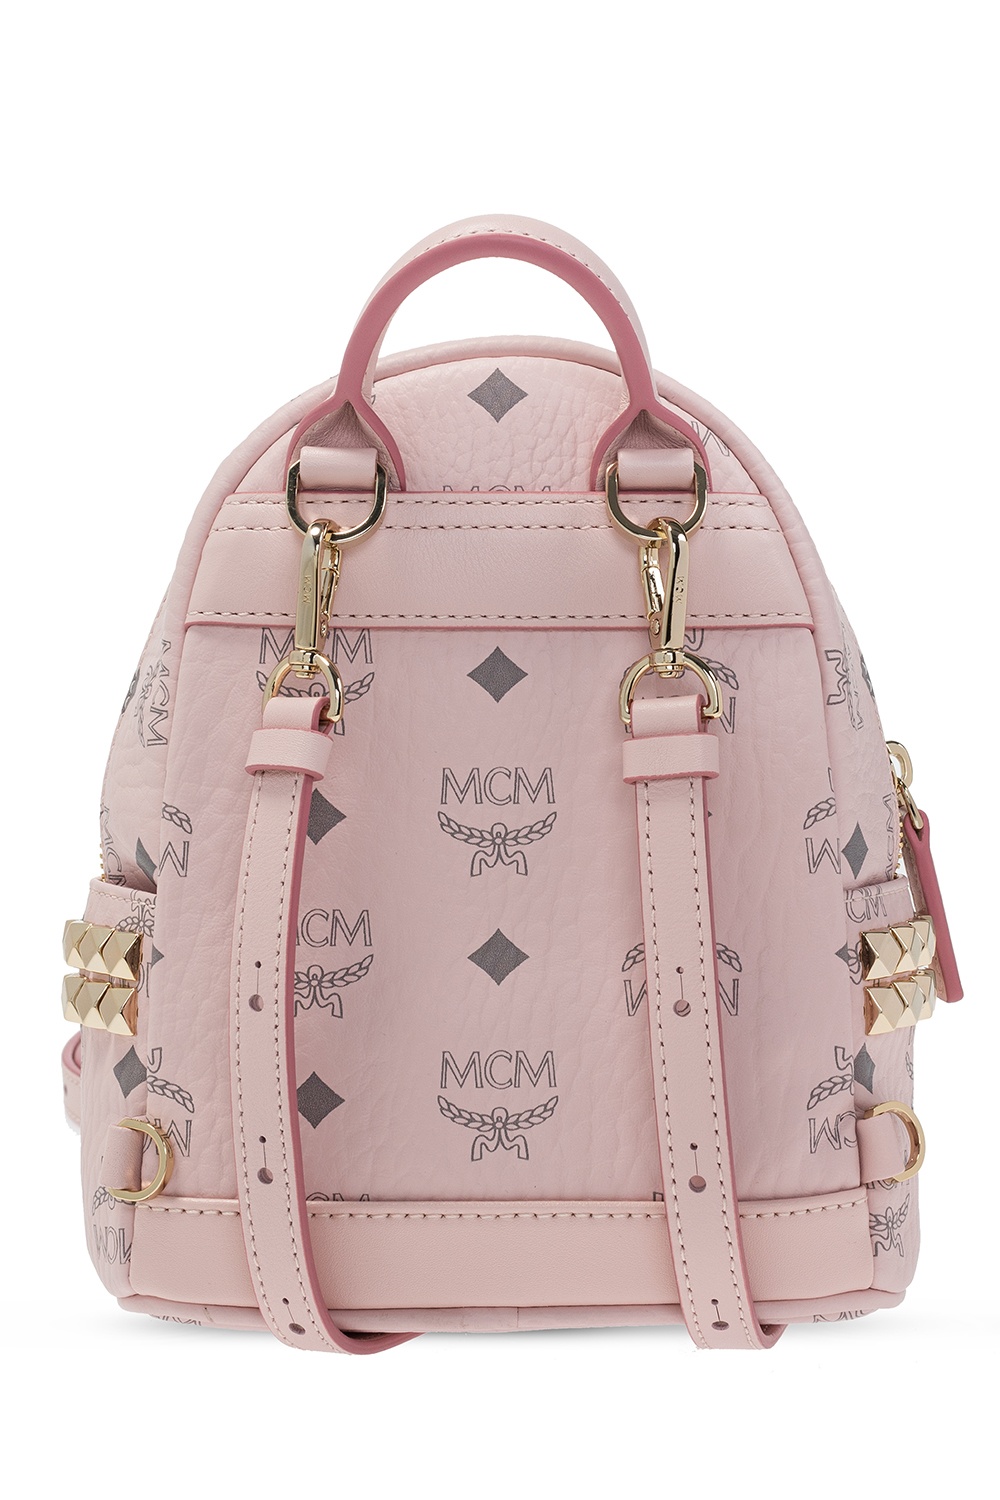 MCM Backpacks – Rucksacks for Women Online – Farfetch